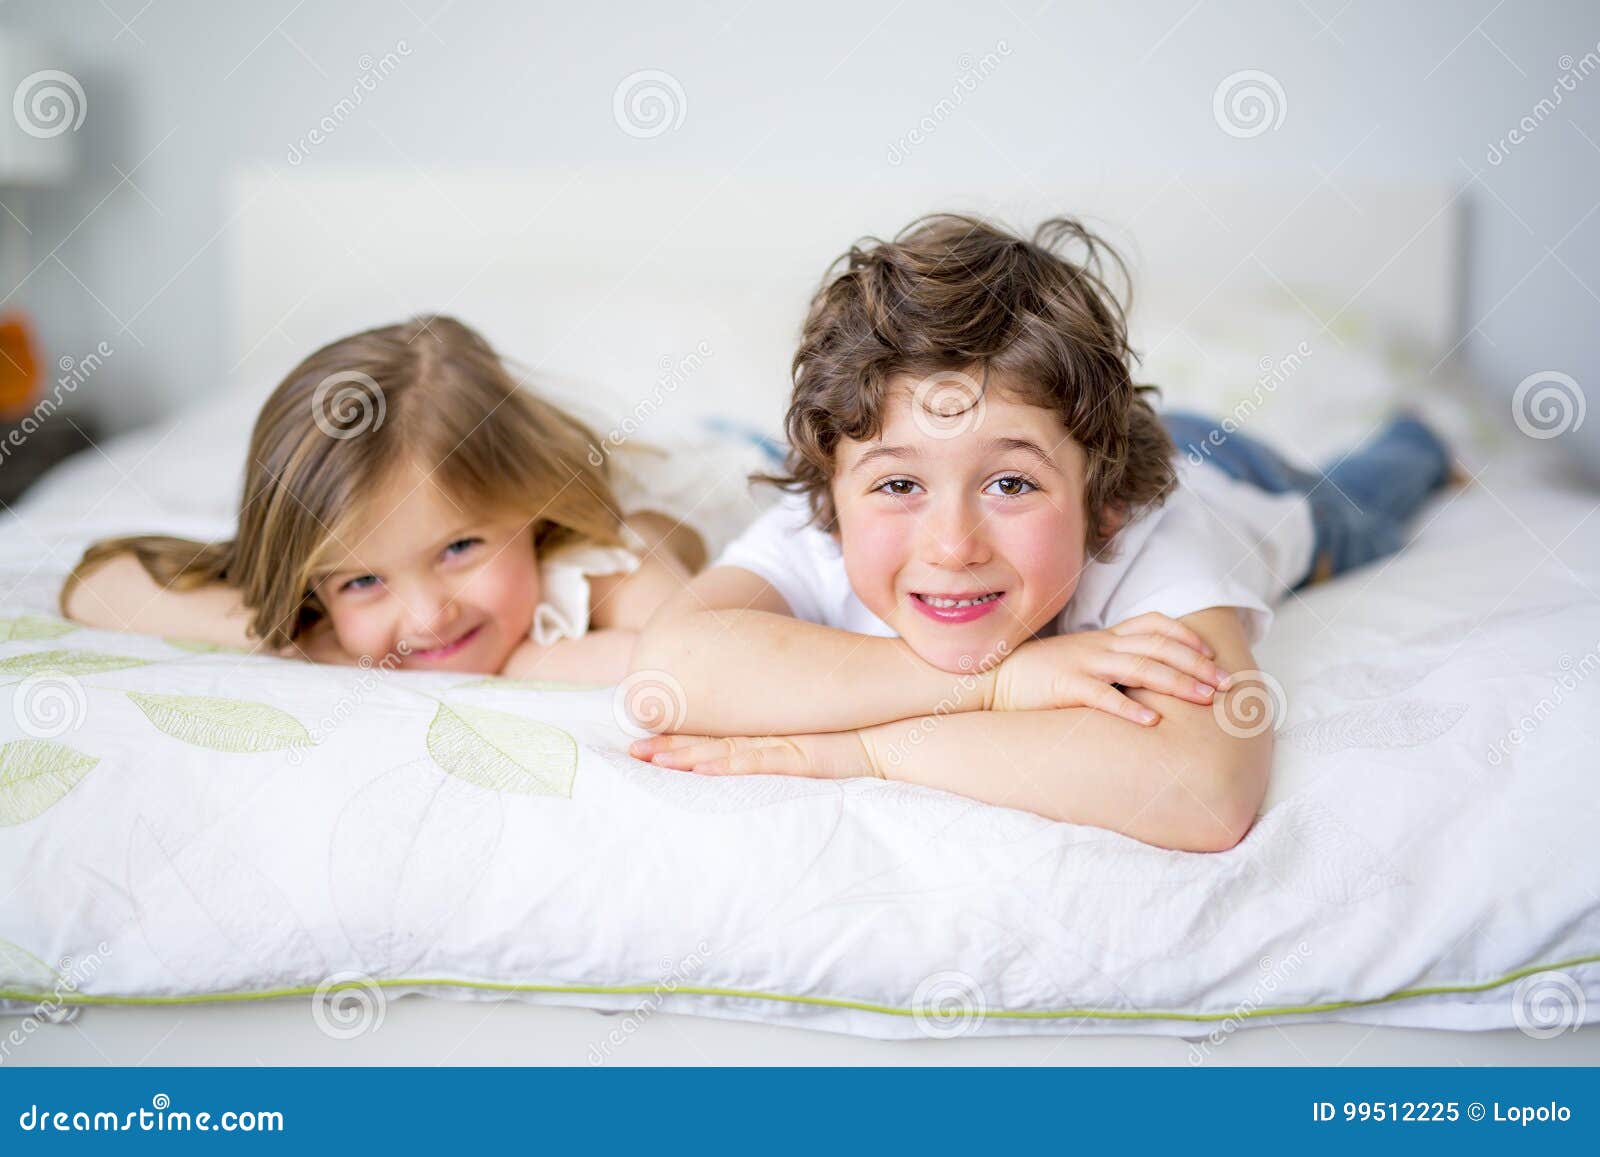 Сестра пришла брату кровать. Брат и сестра в кровати. Брат и сестренка в постели. С младшим братом в постельке. Сестры в пижамах кровать.